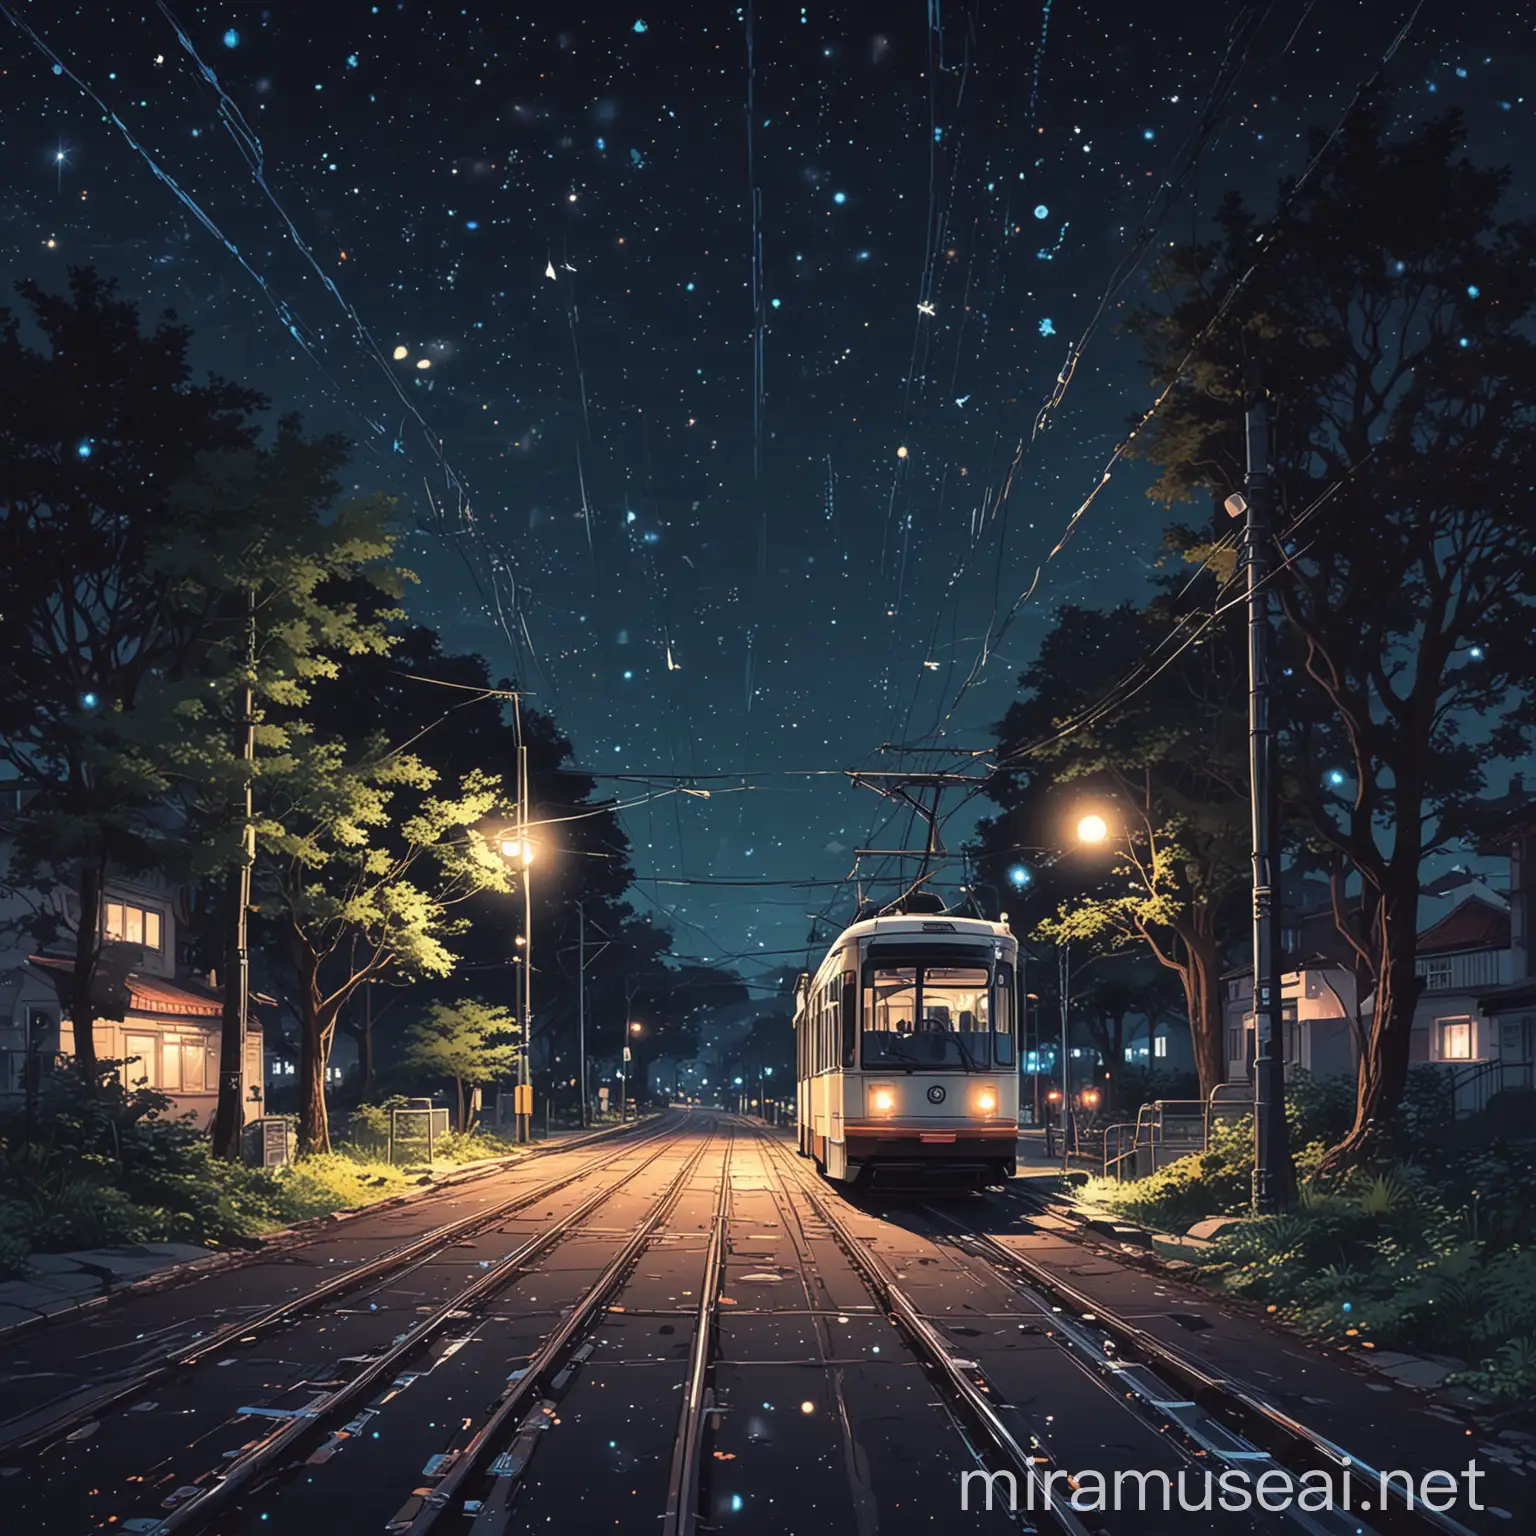 Tram Ride Through Starlit Forest Serene Anime Aesthetic